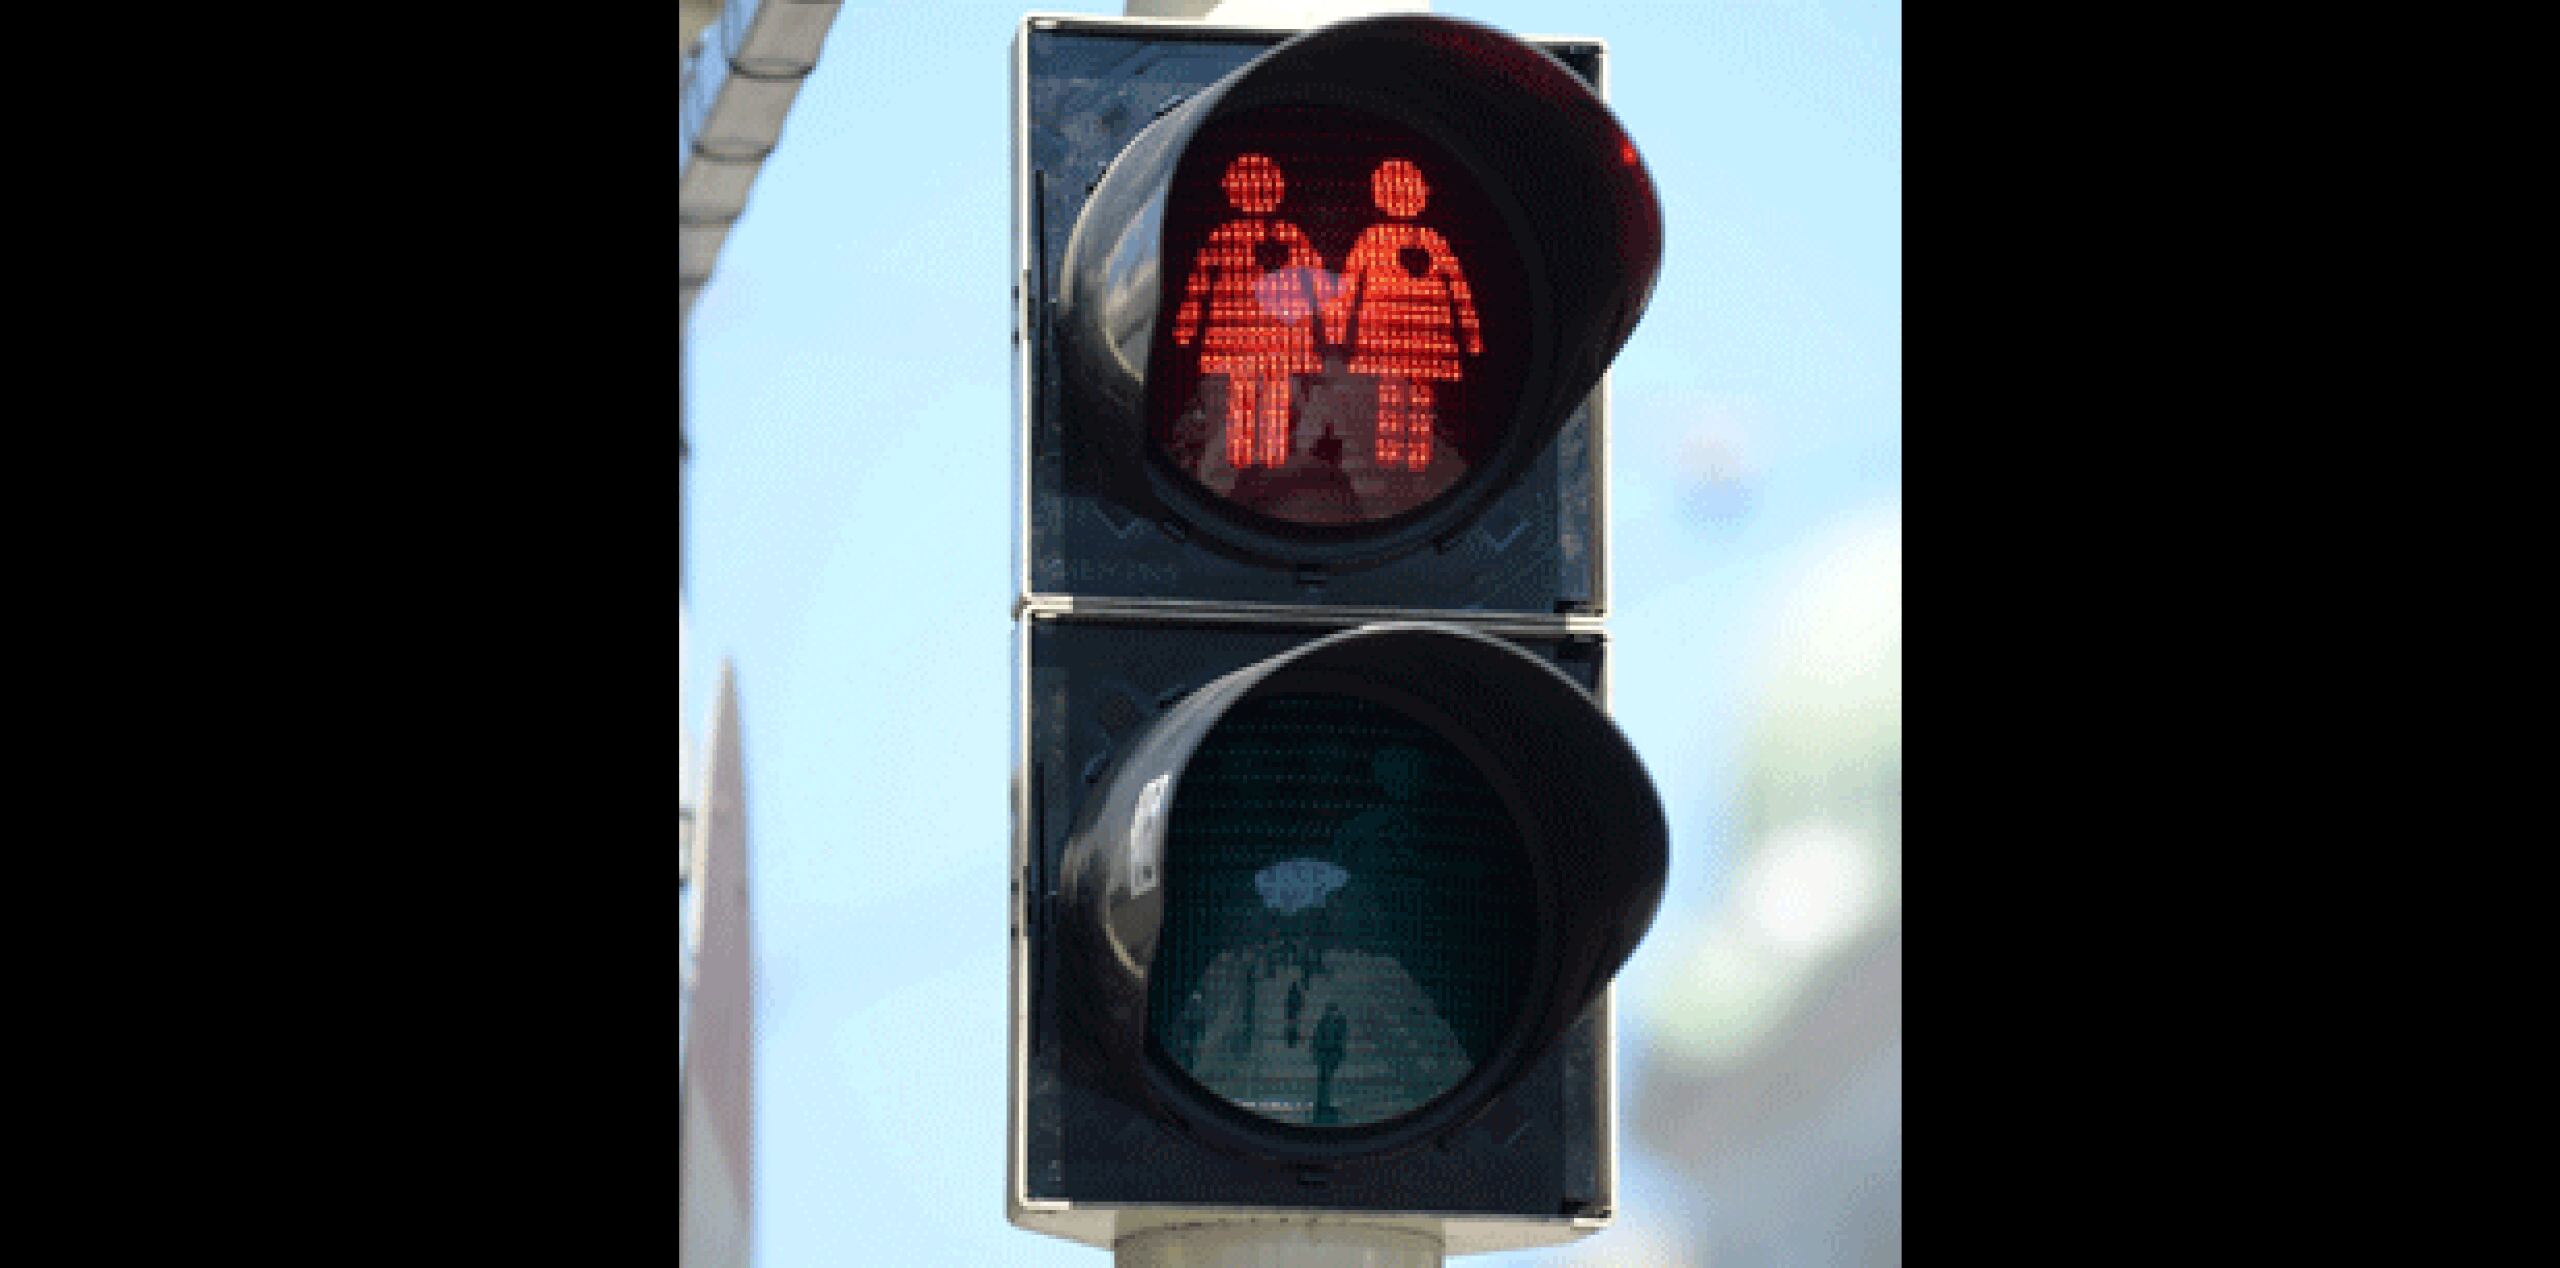 Establecidas recientemente en 47 intersecciones, iban a ser retiradas en junio, al término de varios eventos amigables para los homosexuales. Pero la concejal de Viena Maria Vassilakou, responsable de cuestiones vinculadas al tránsito, dijo que las señales se quedarán. (EFE)